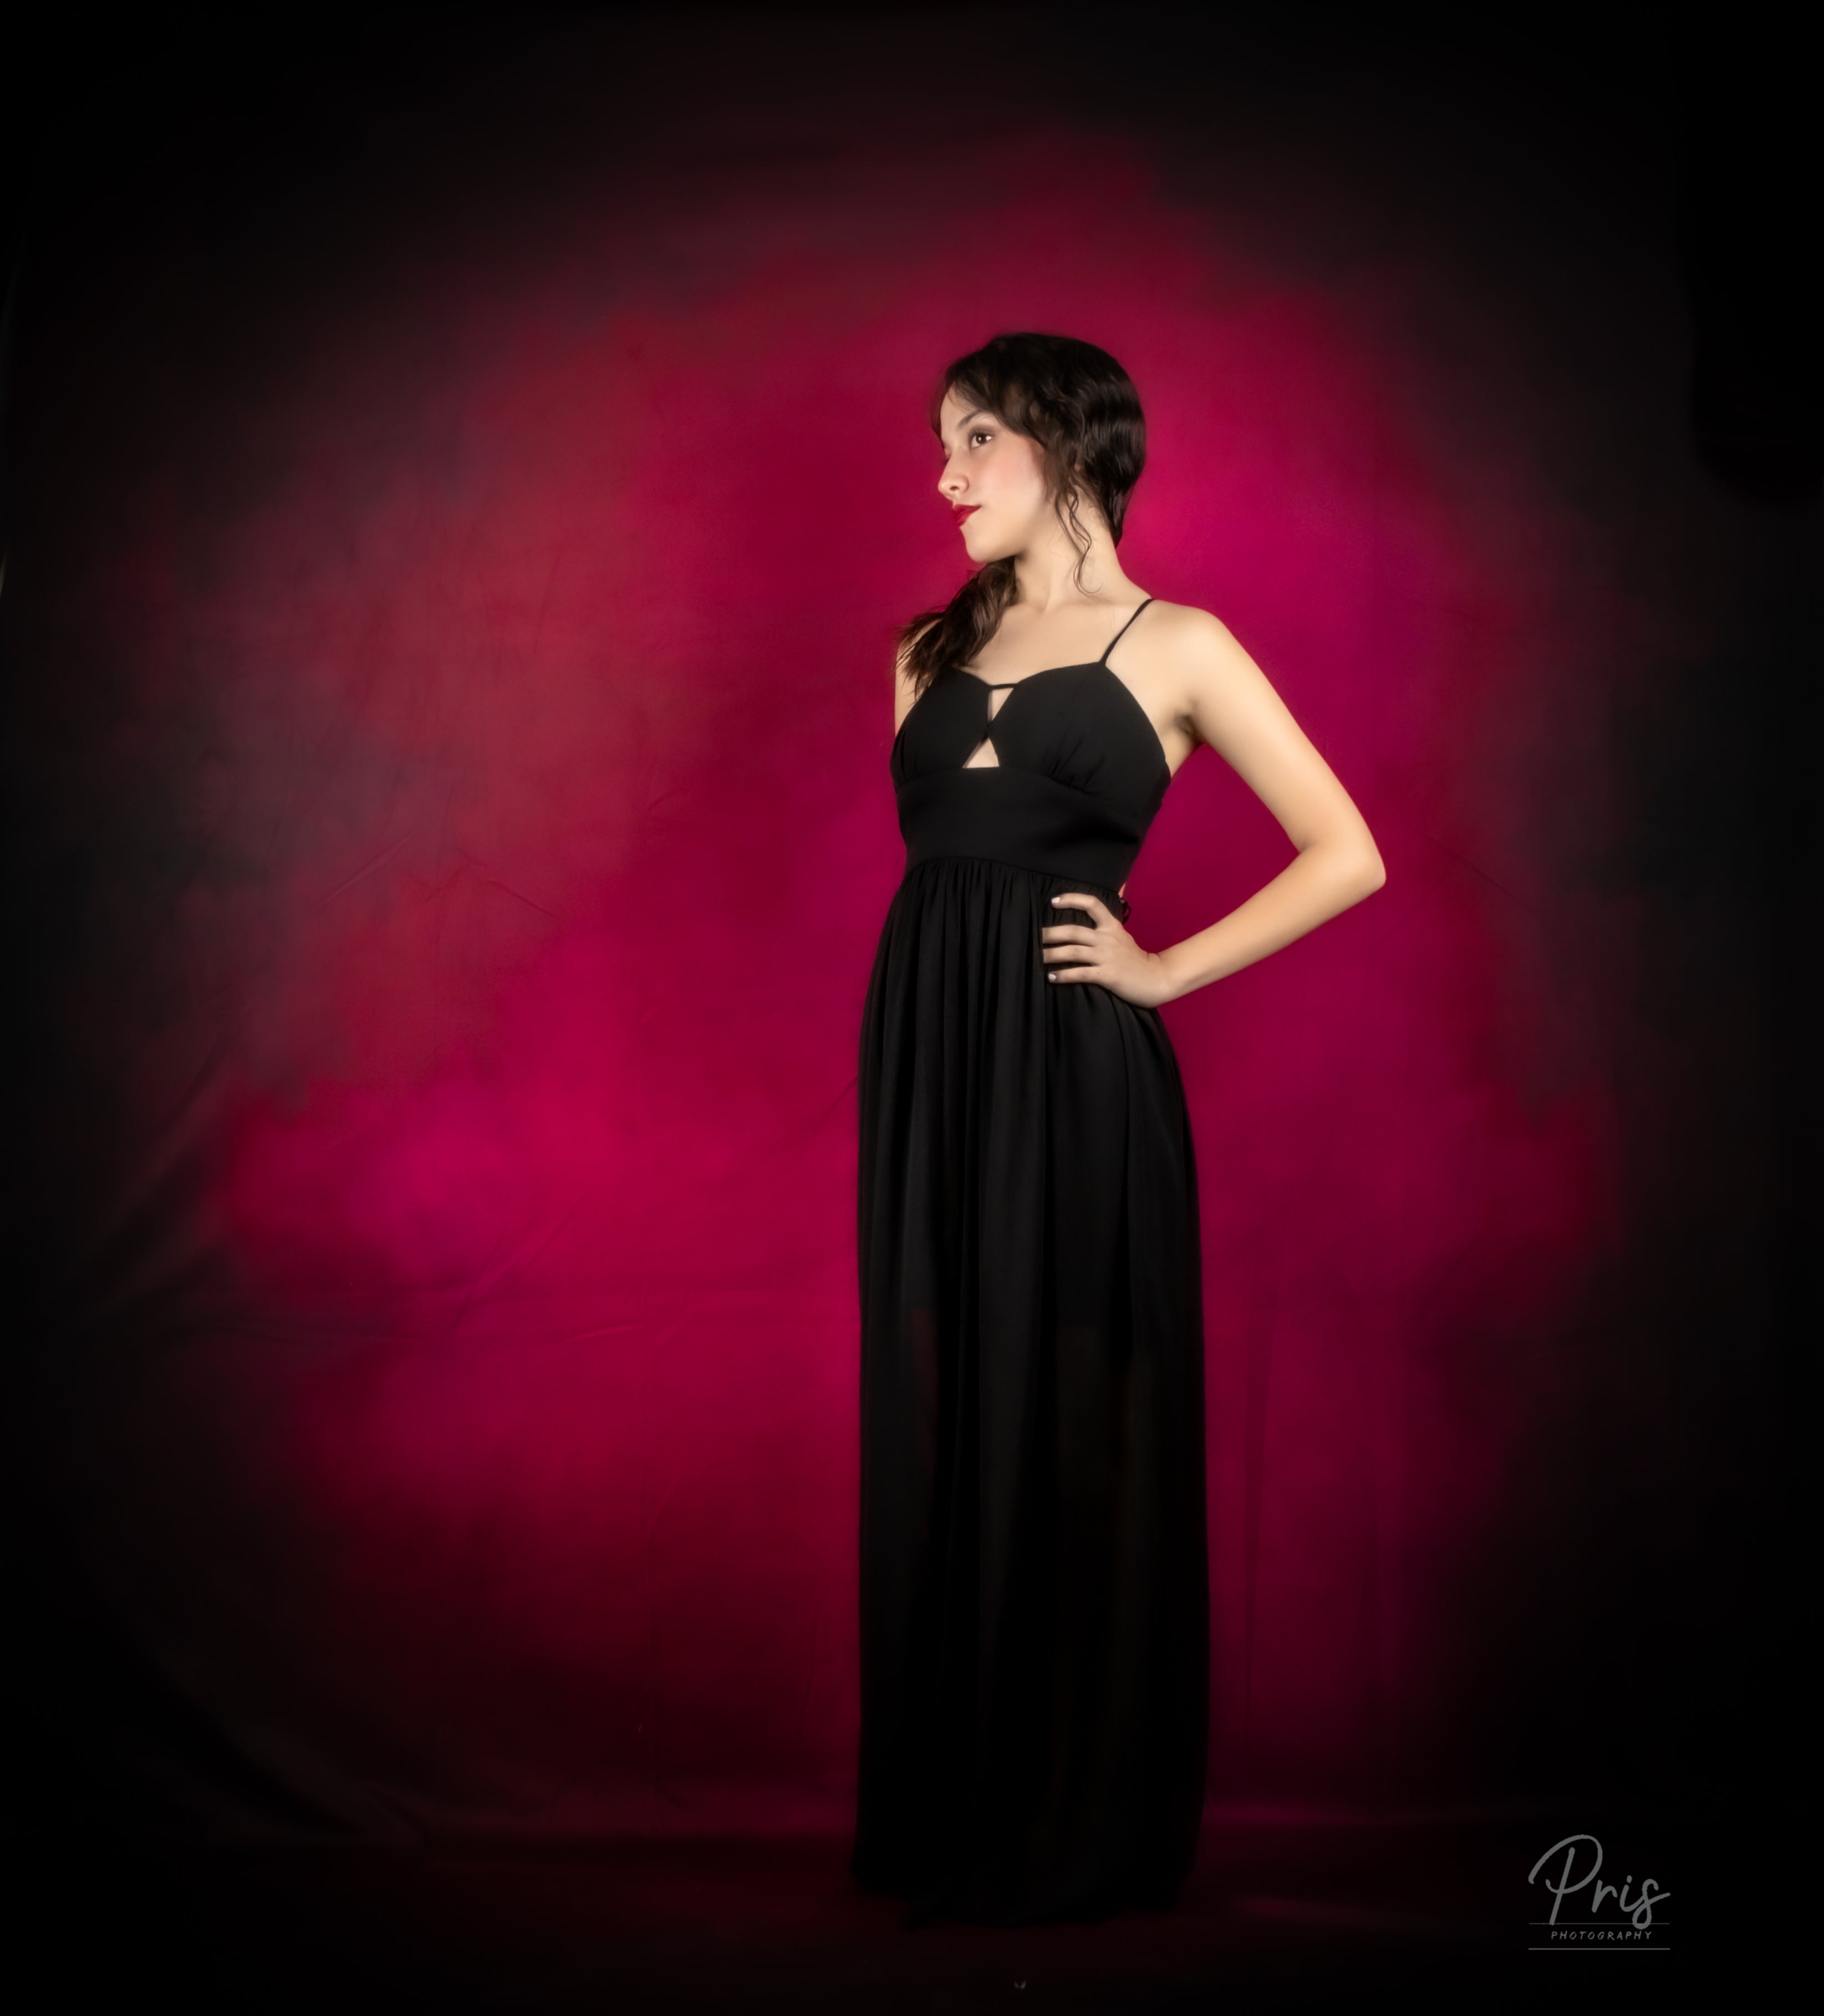 Kate Abstrakter dunkler Rosen-roter Hintergrund für Fotografie